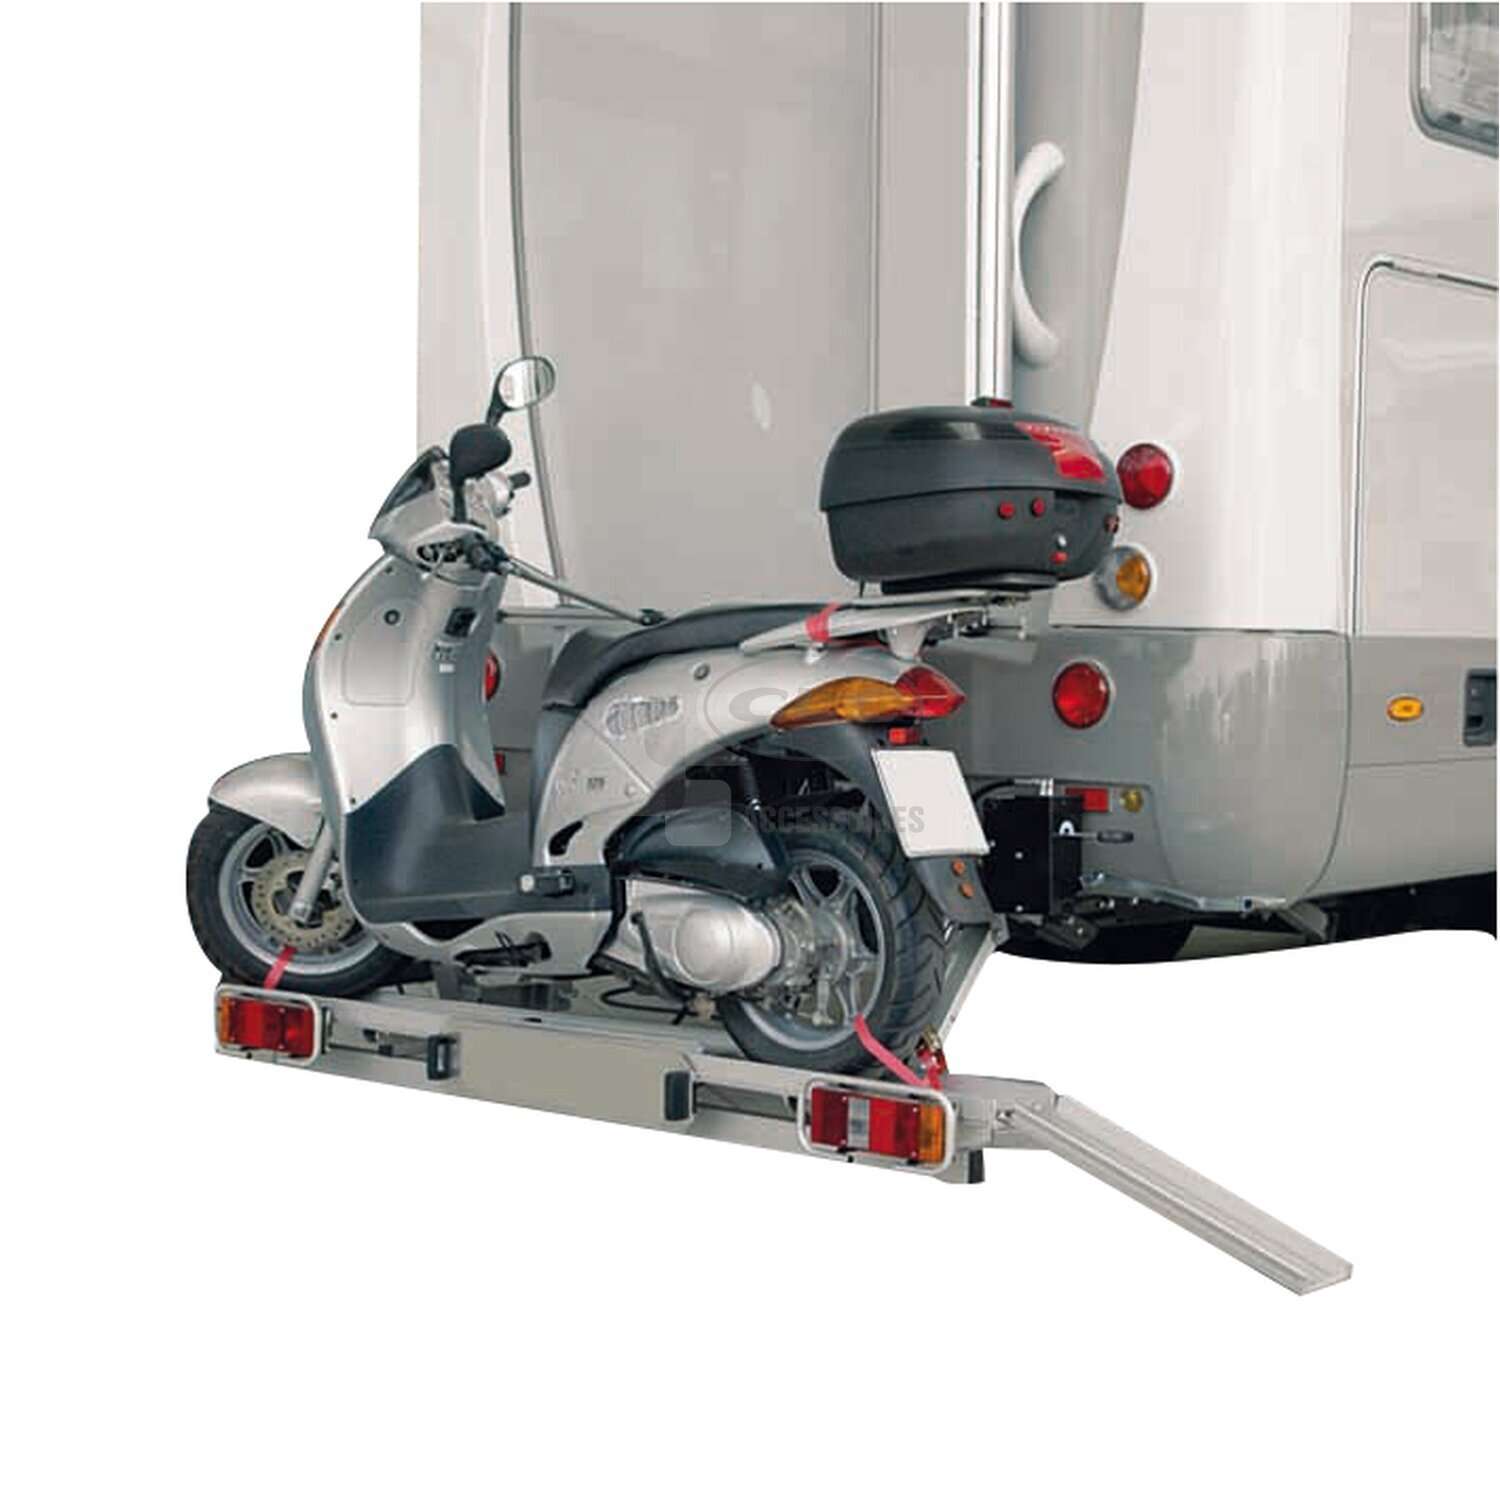 Détails des options et accessoires pour scooter